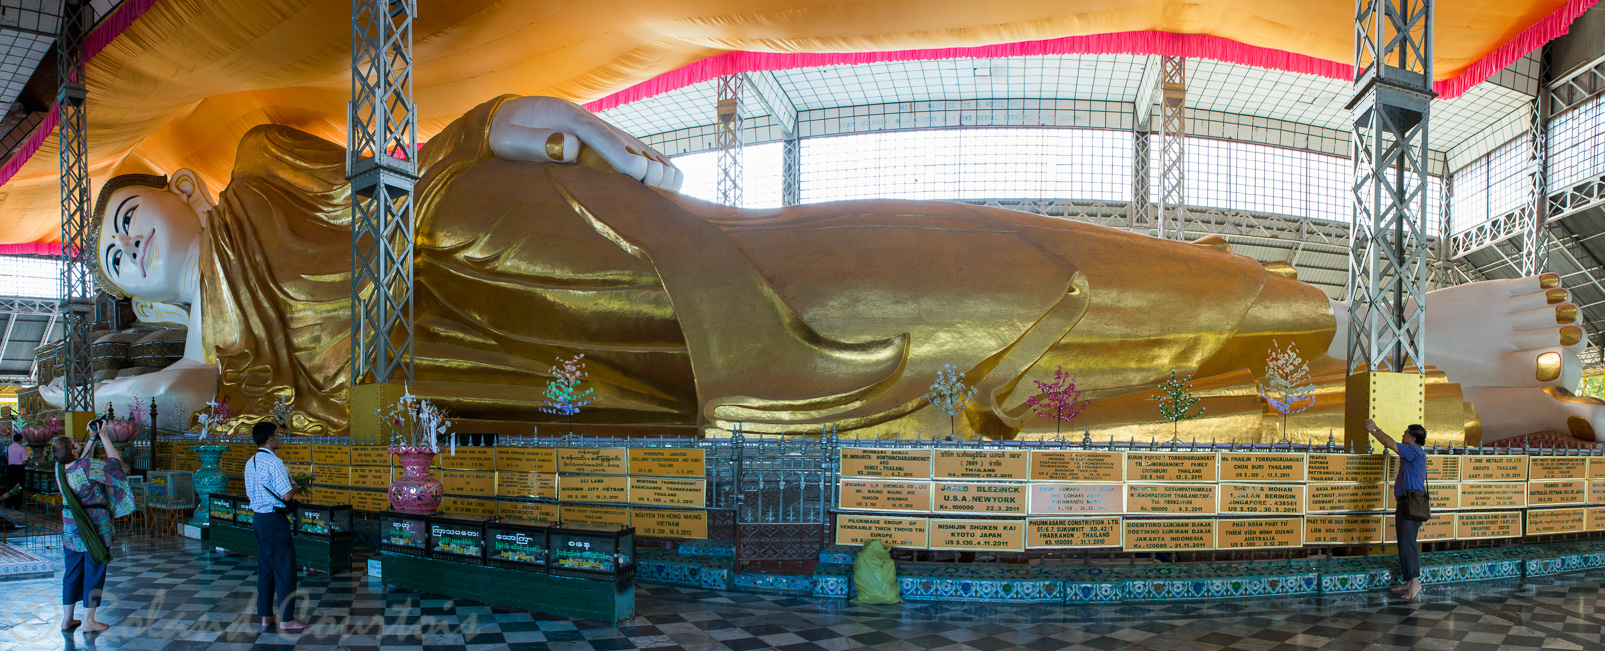 A Bago, l'immense Bouddha couché  de Shwethalyaung mesure 55 m de long.